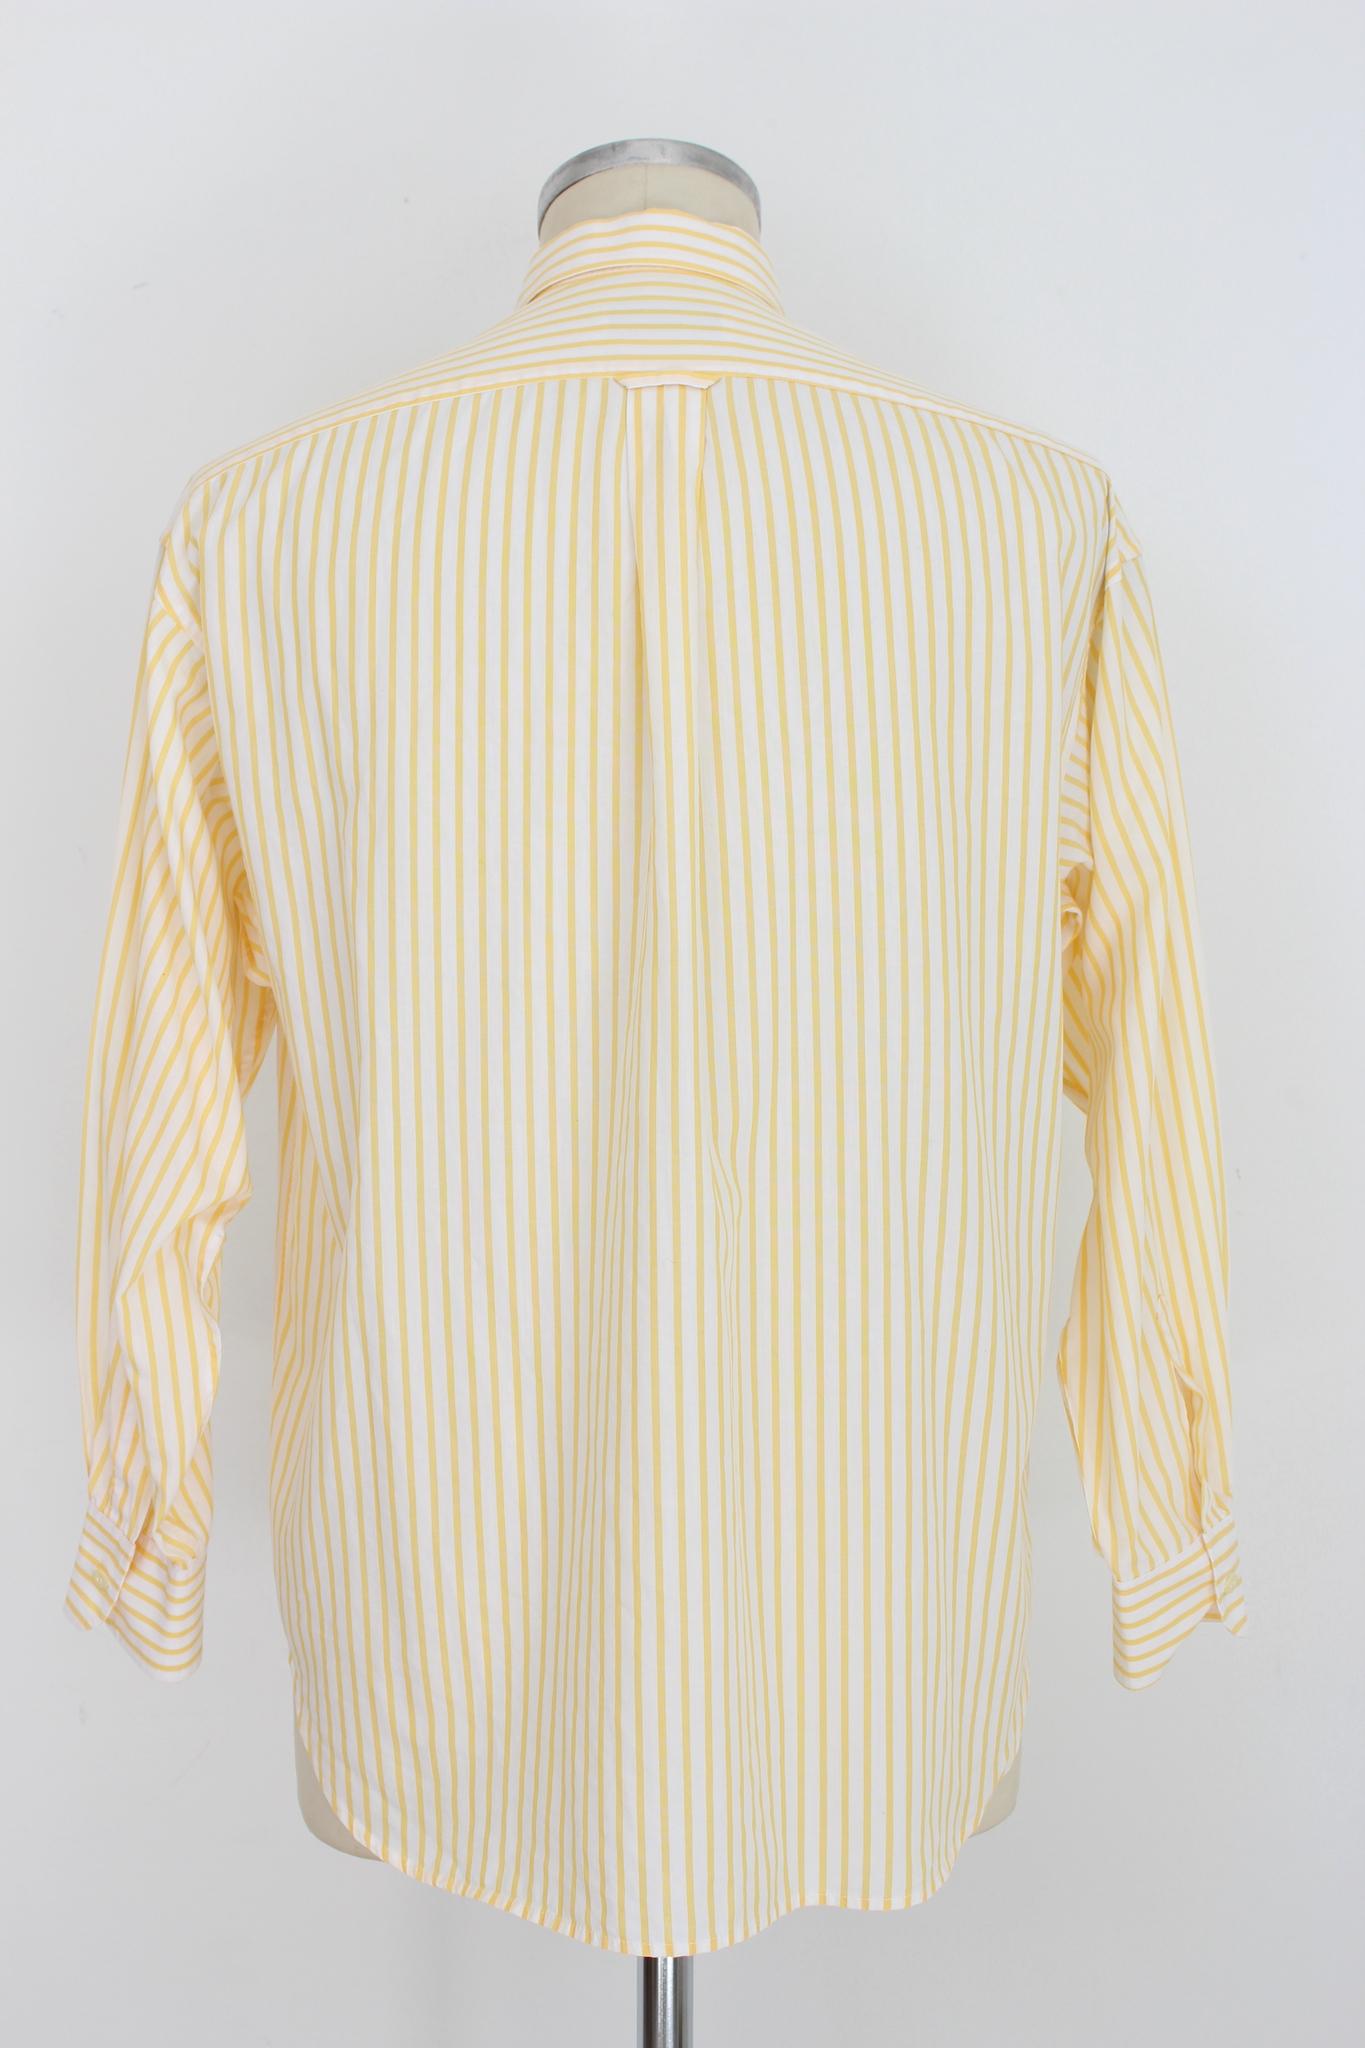 Chemise à rayures jaunes et blanches Burberry vintage des années 90. Modèle classique, tissu 100% coton. Fabriqué en France. L'état est très bon, il y a quelques petites taches.

Taille : L

Épaule : 46 cm
Buste / Poitrine : 56 cm
Manches : 59